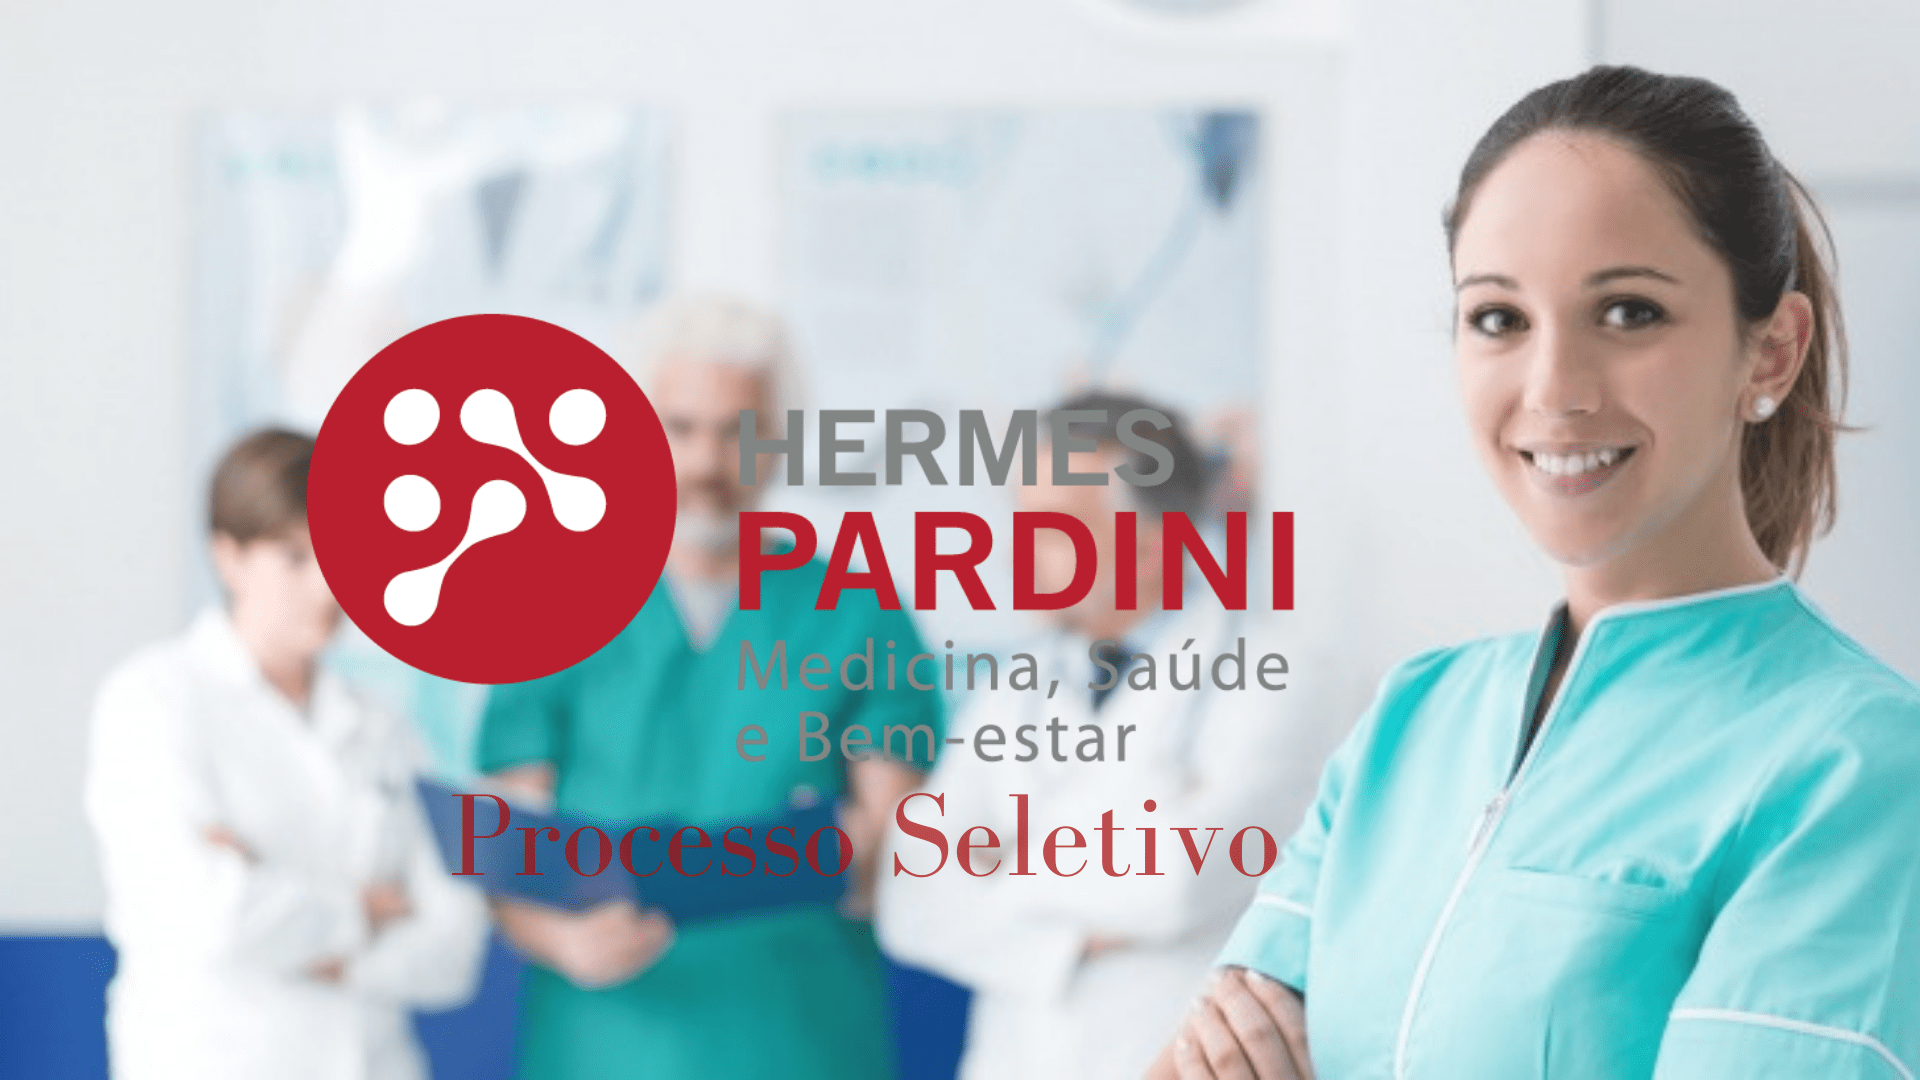 Hermes Pardini Trabalhe Conosco: como enviar currículo para vagas abertas